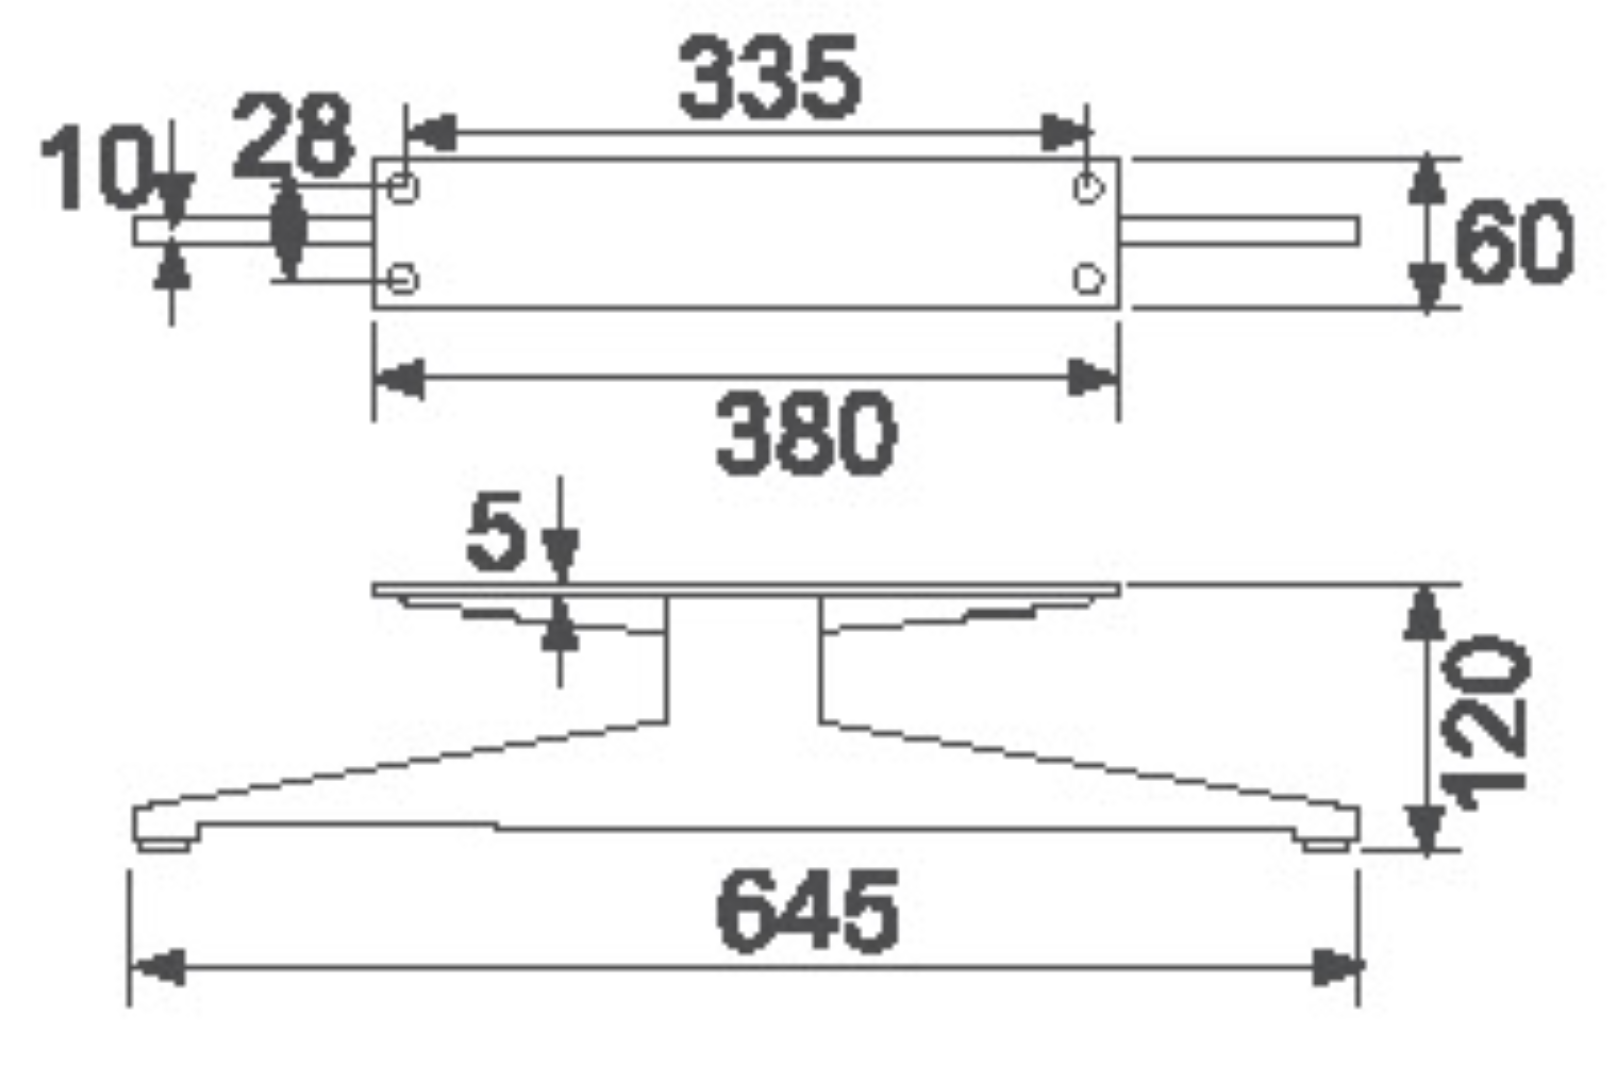 Kaki logam Biaode SHB3017 Welding mekanik otomatis kanggo sofa Kaki logam/SHB3017 (H: 4.7 inci) Gambar Unggulan